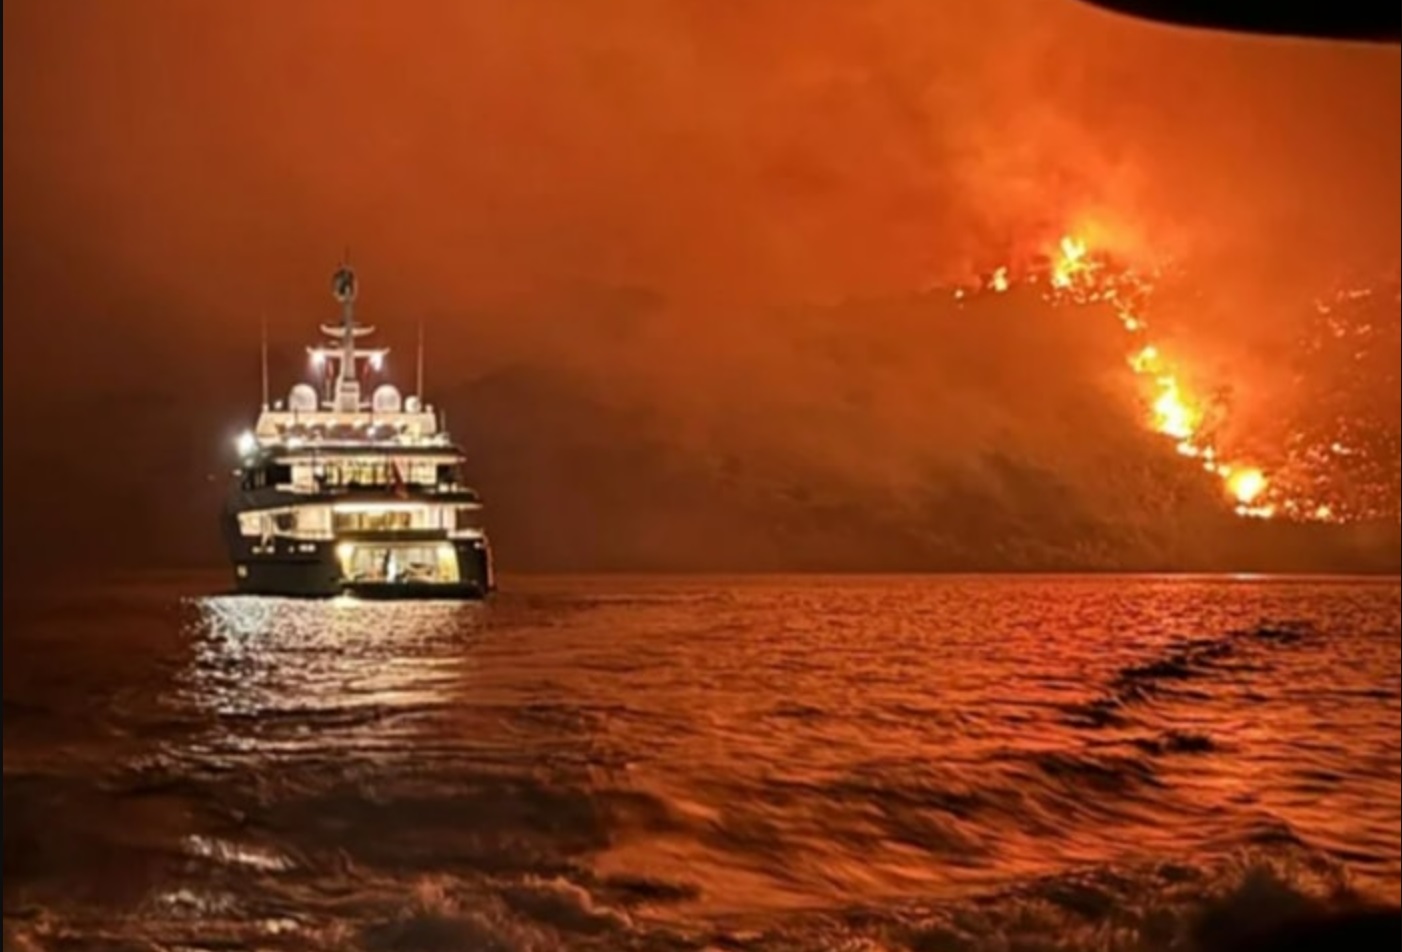 Jachtról kilőtt tűzijáték okozott erdőtüzet Görögországban